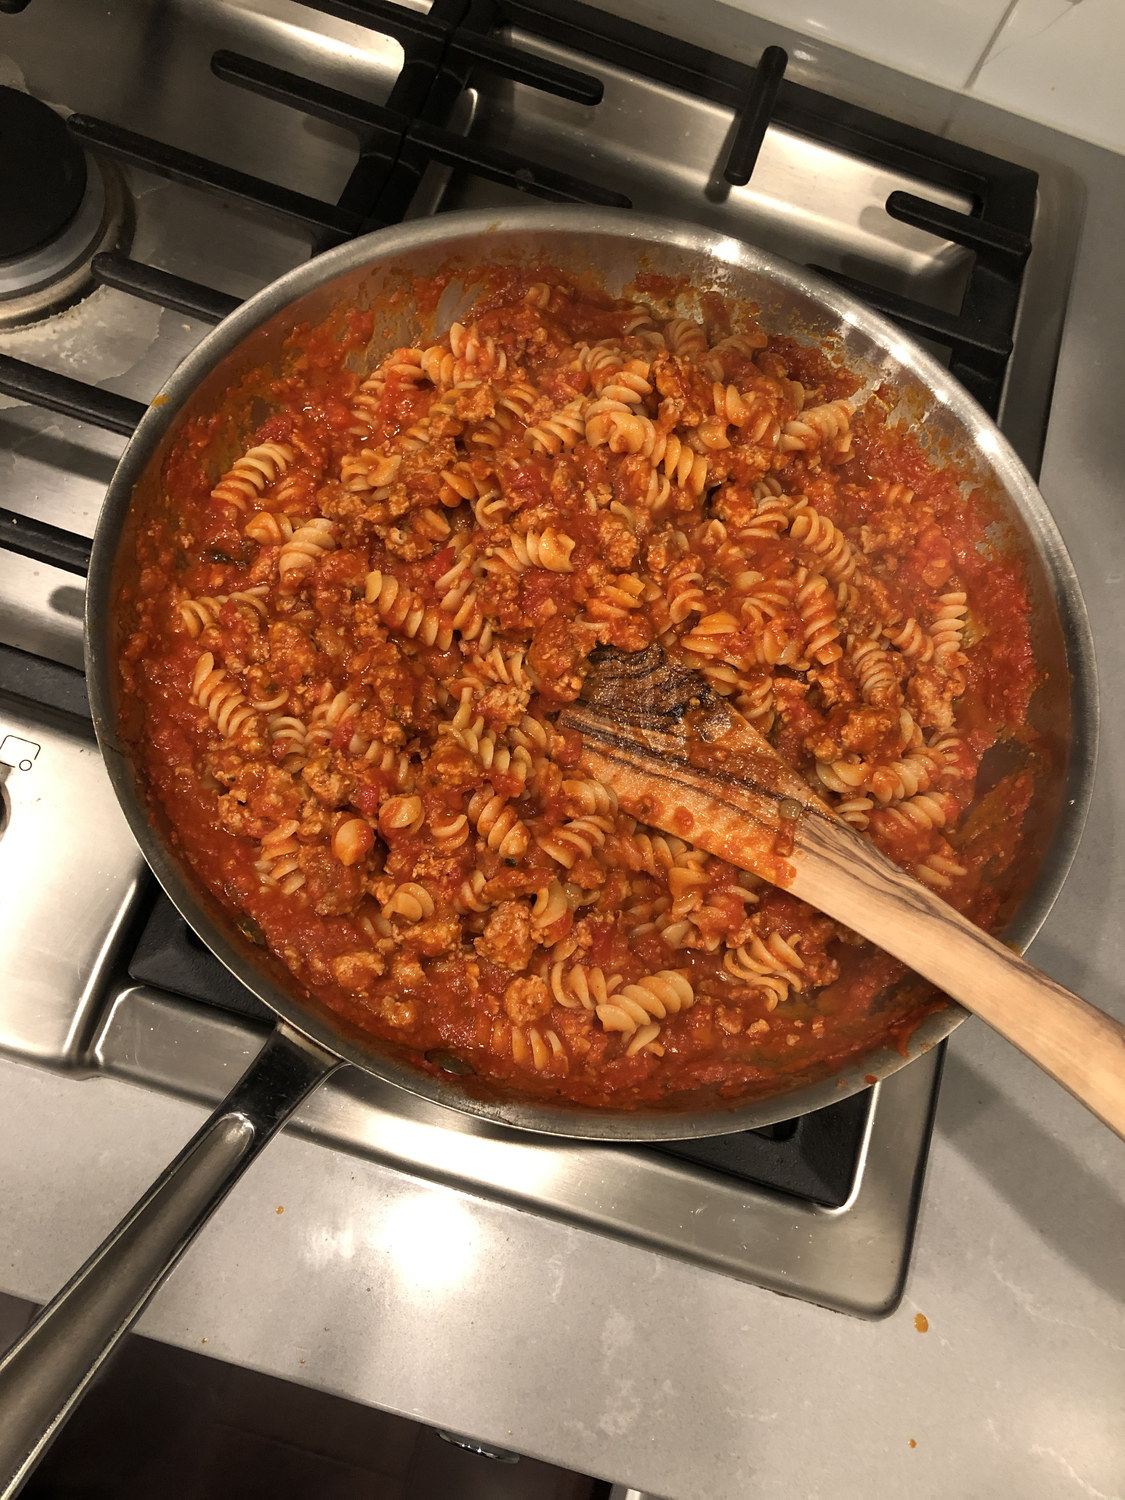 Fusilli in tomato sauce simmering.